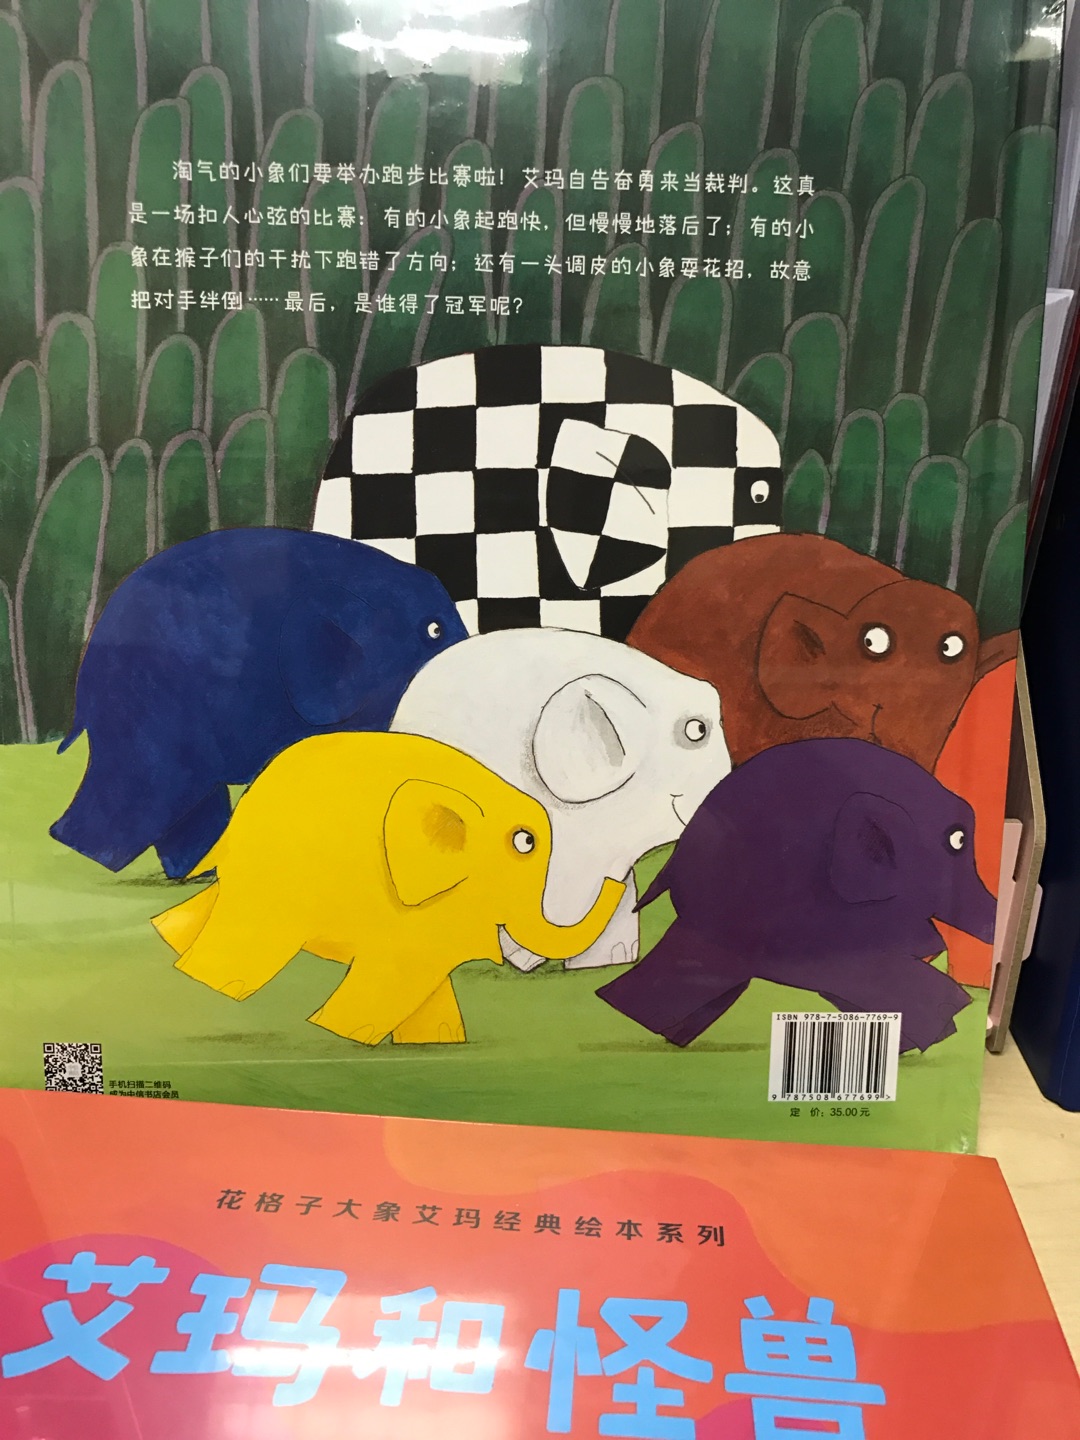 花格子大象系列是经典，一直想入手，有活动赶紧买了，准备最近拿给儿子读起来！